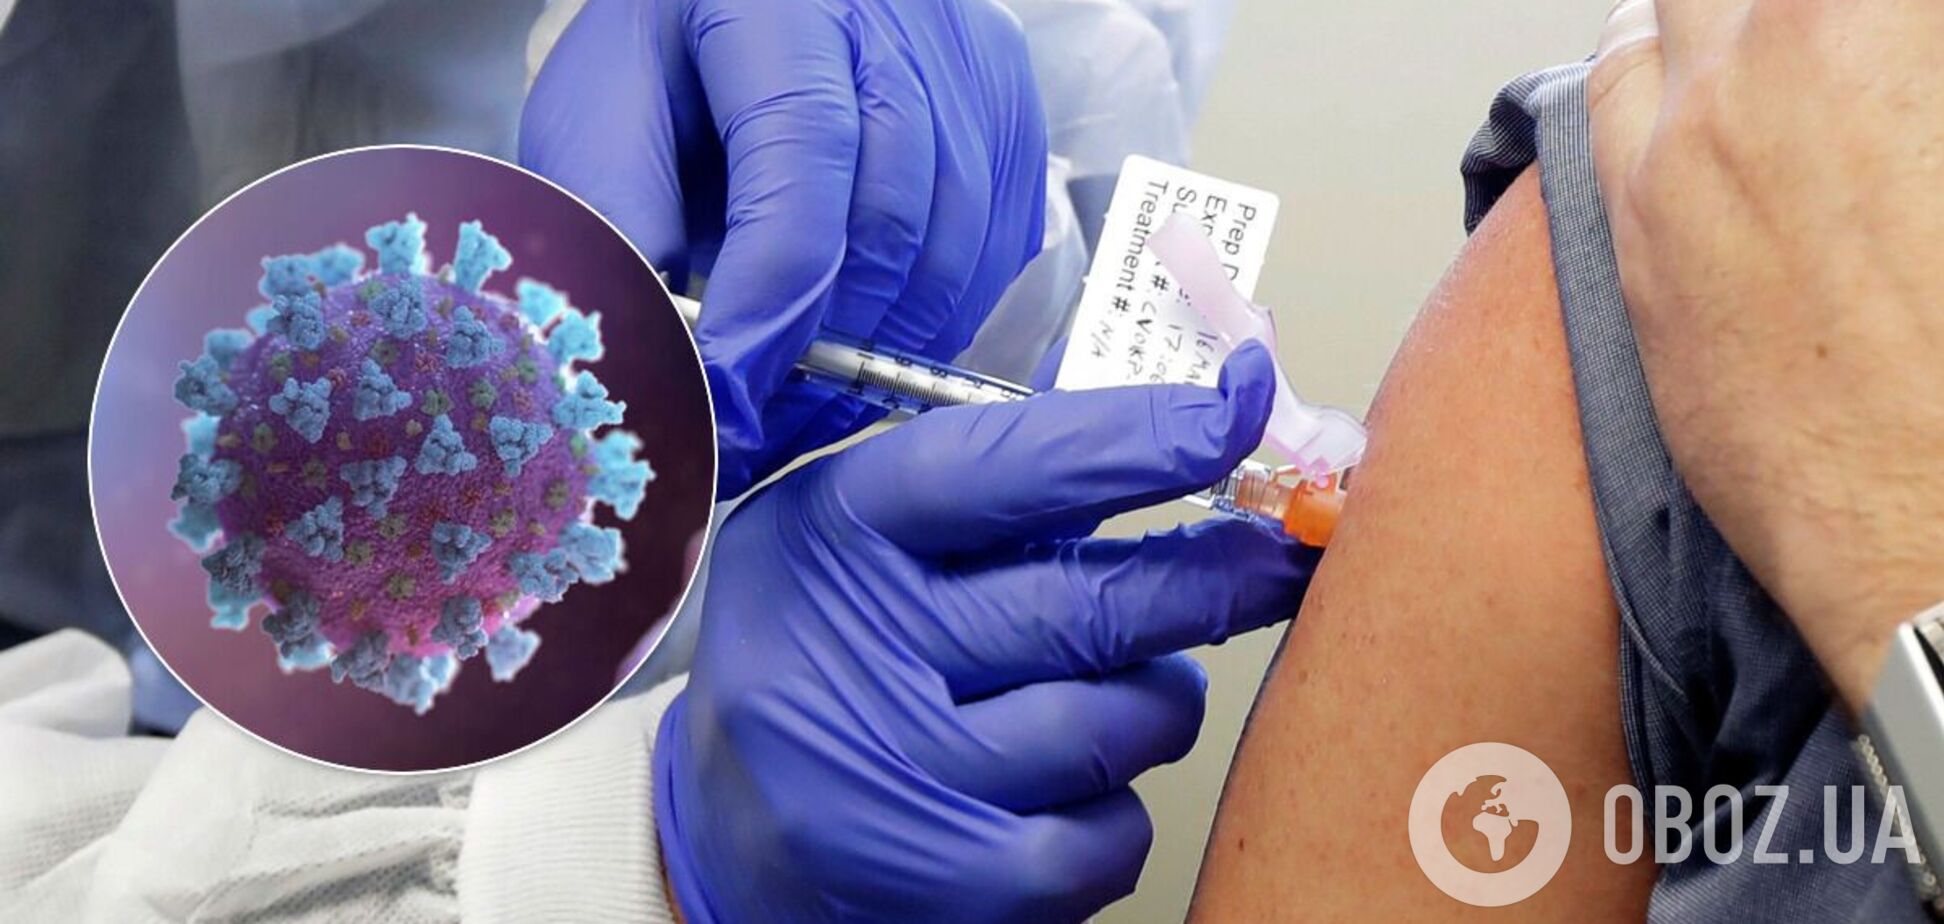 Вакцина от COVID-19 может быть бессильной против вируса-мутанта, – врач